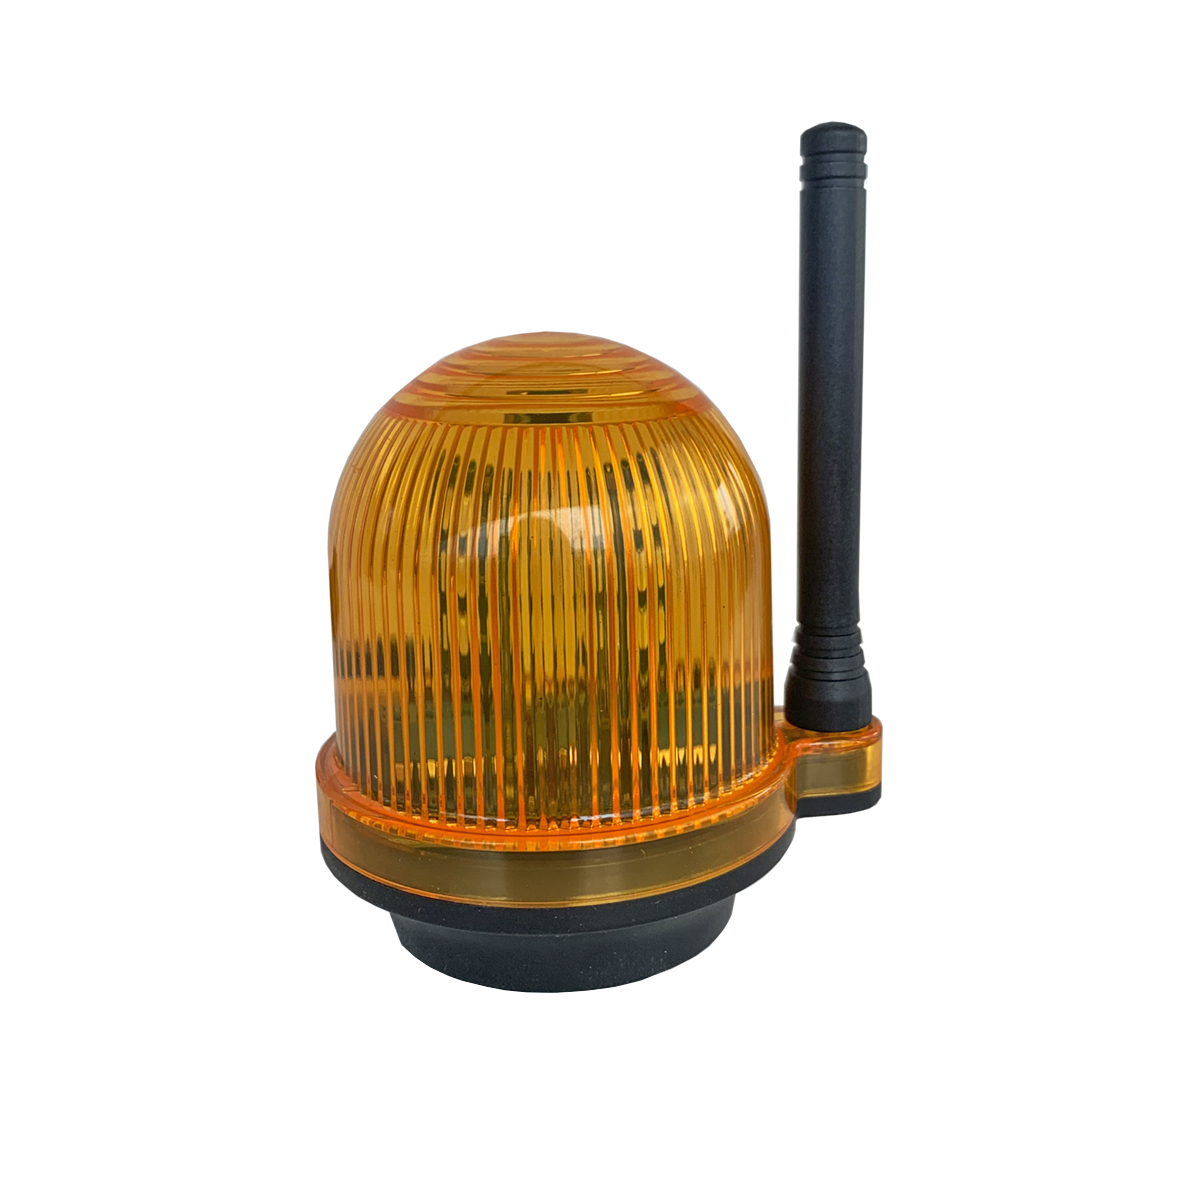 Сигнальная лампа с звуковым сигналом для промышленных объектов Nord Ice YS-111 светодиодная сигнальная лампа emas